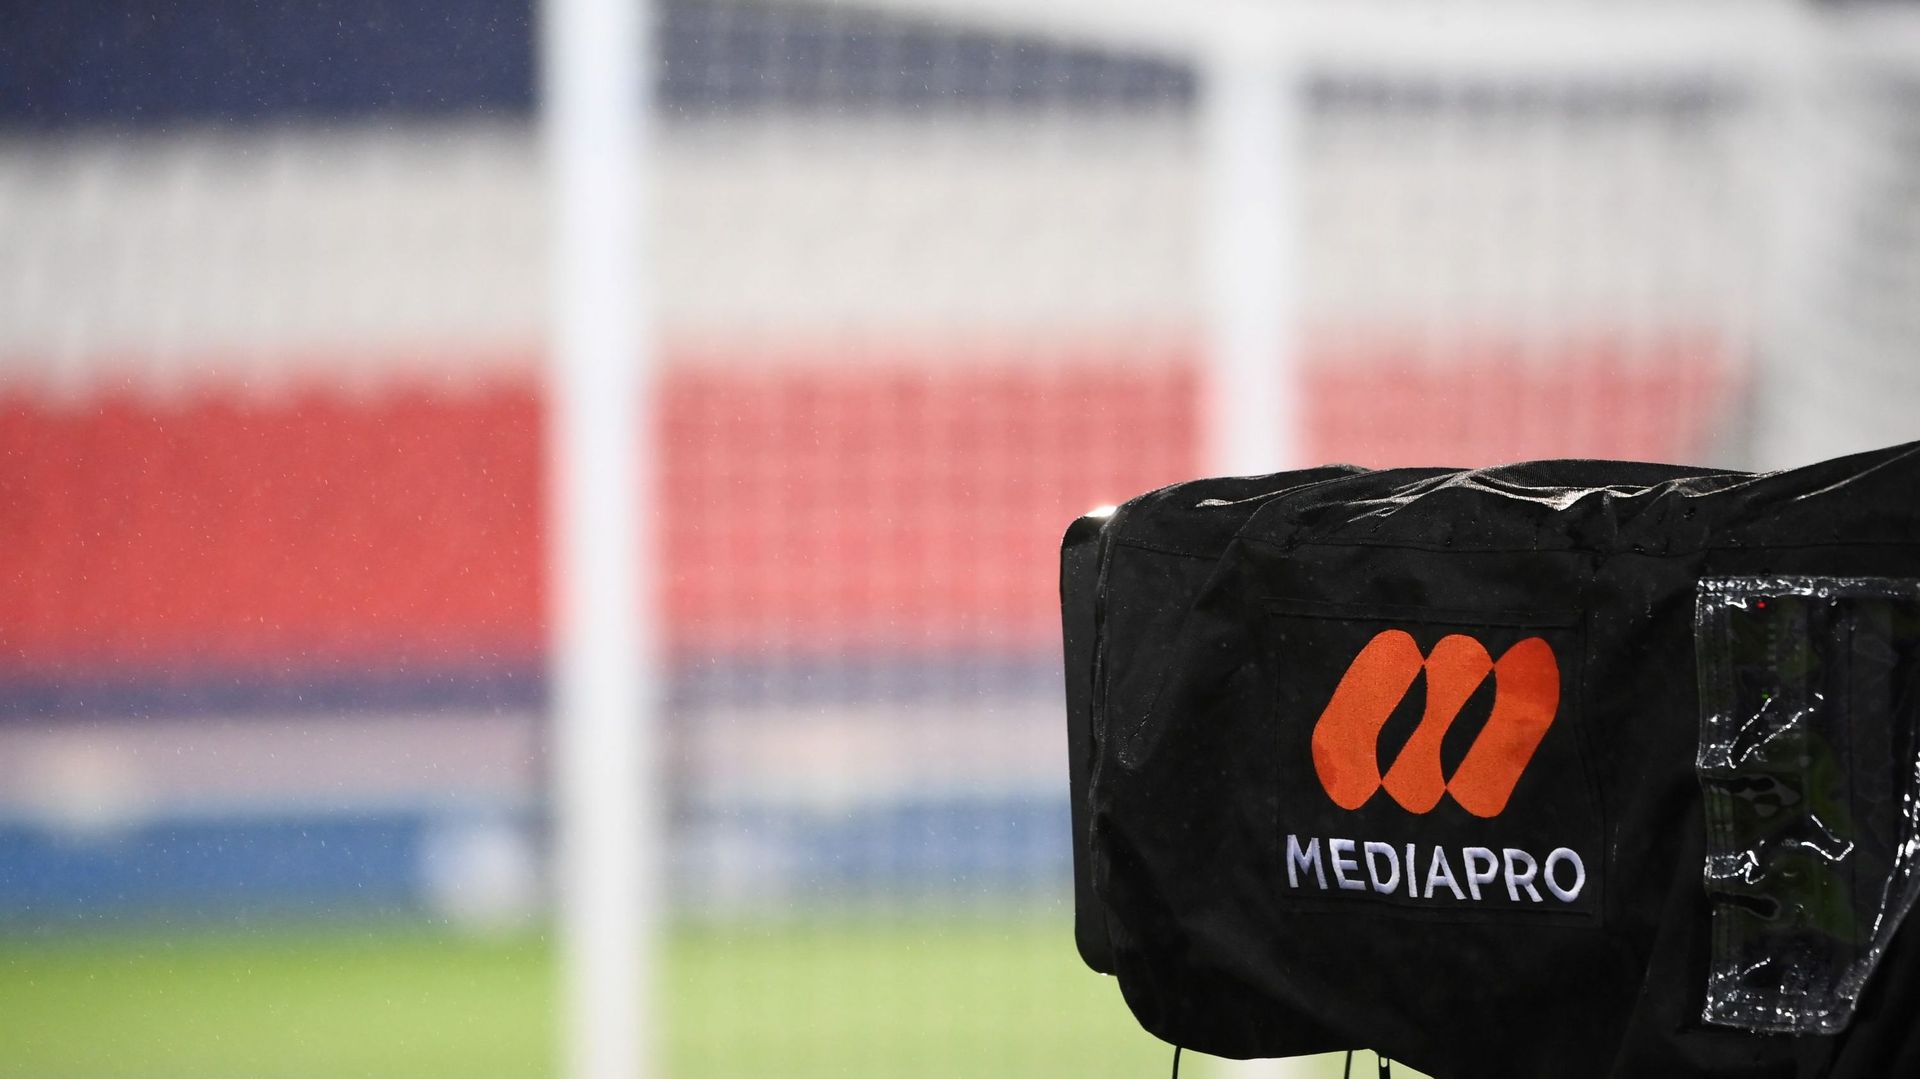 InstaLive RTBF Sport – Pierre Maes : "L’affaire Mediapro aura des conséquences dans toute l’Europe"